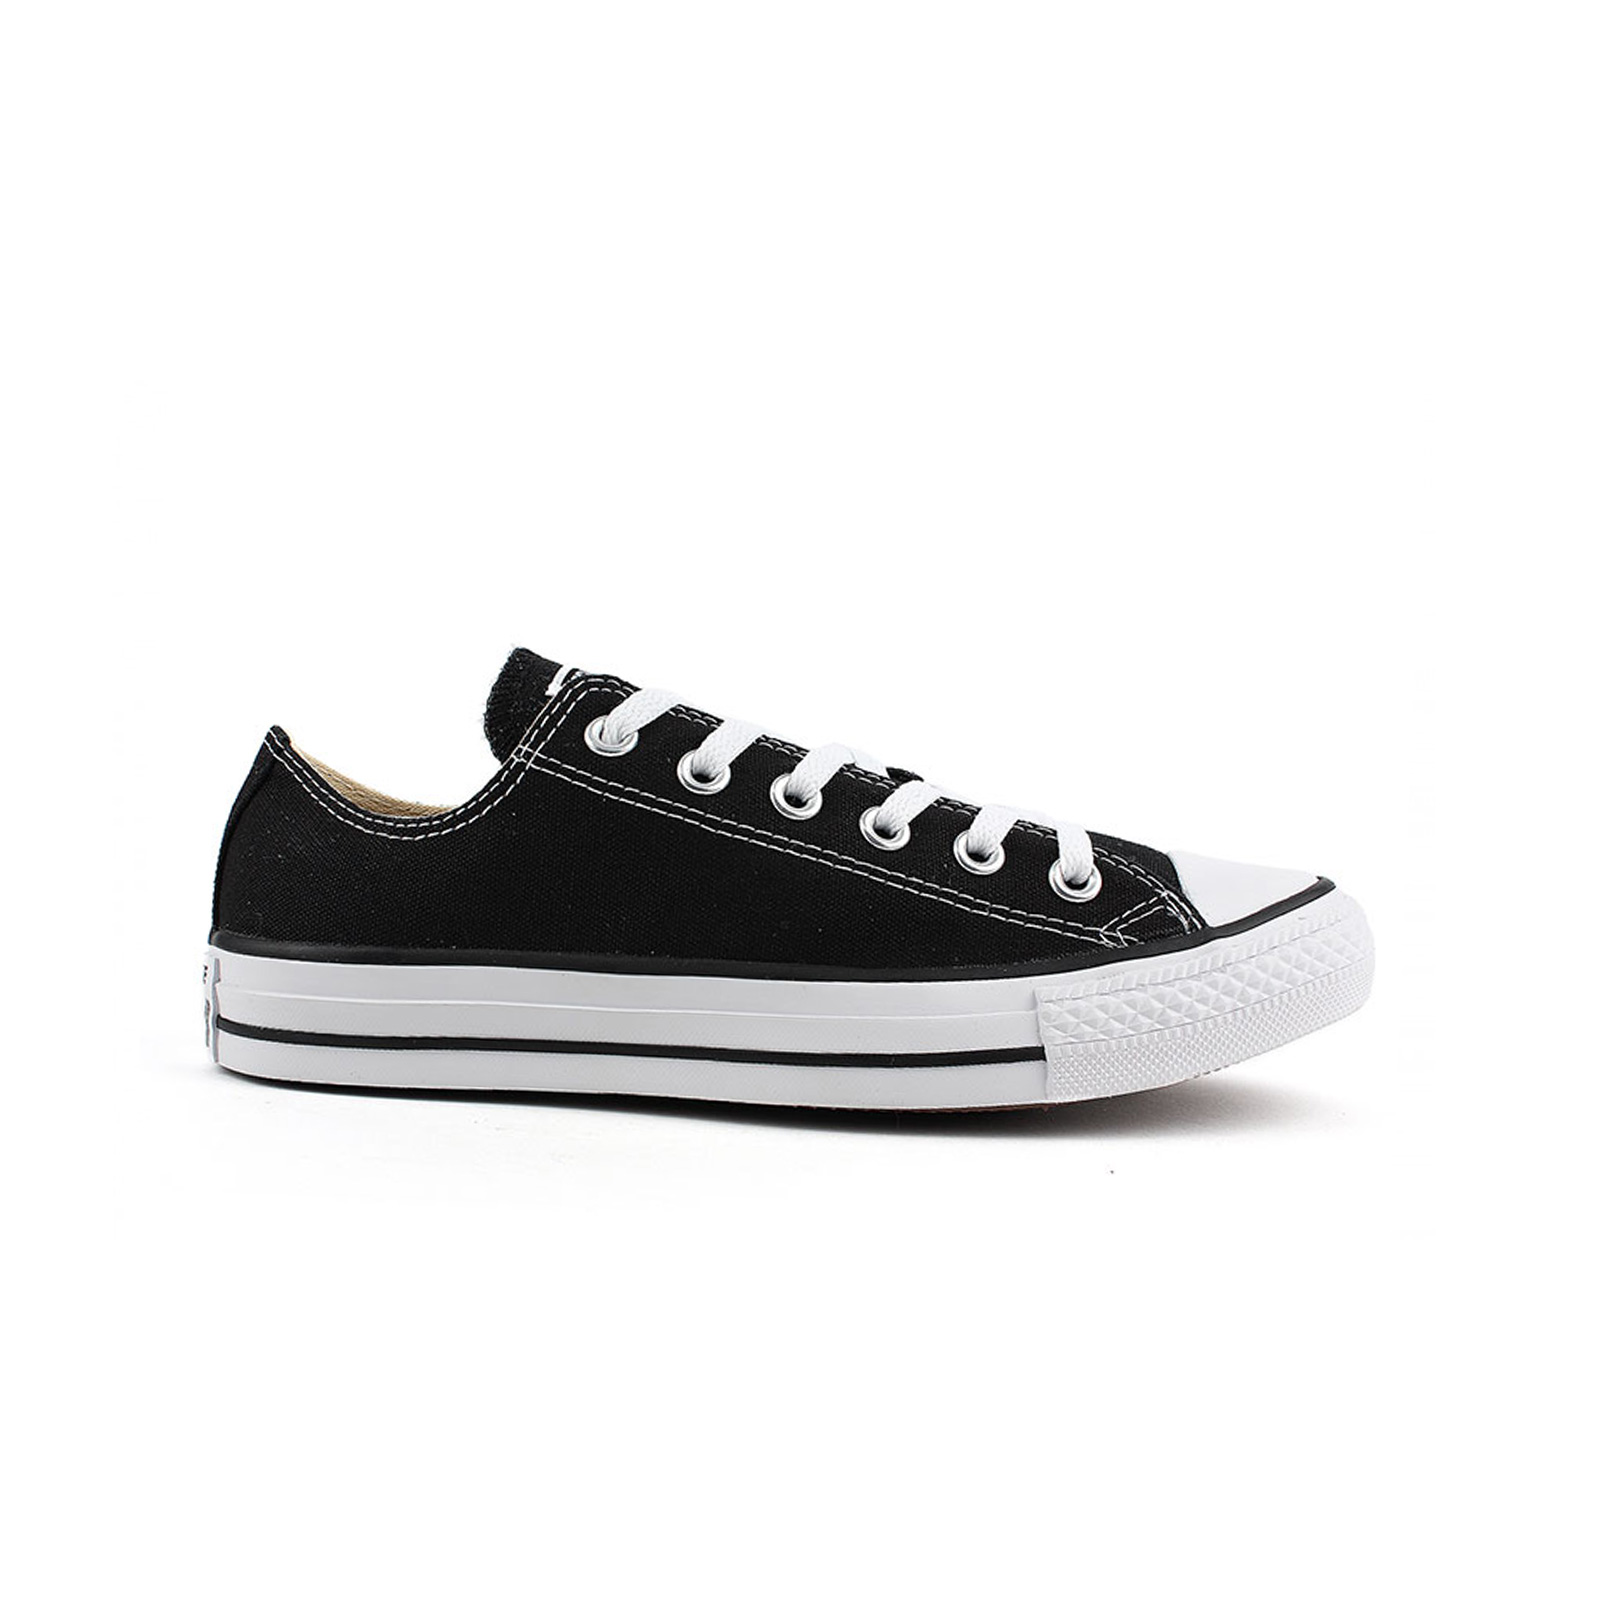 Ανδρικά > Παπούτσια > Sneaker > Παπούτσι Low Cut Converse - CHUCK TAYLOR ALL STAR - 001-BLACK